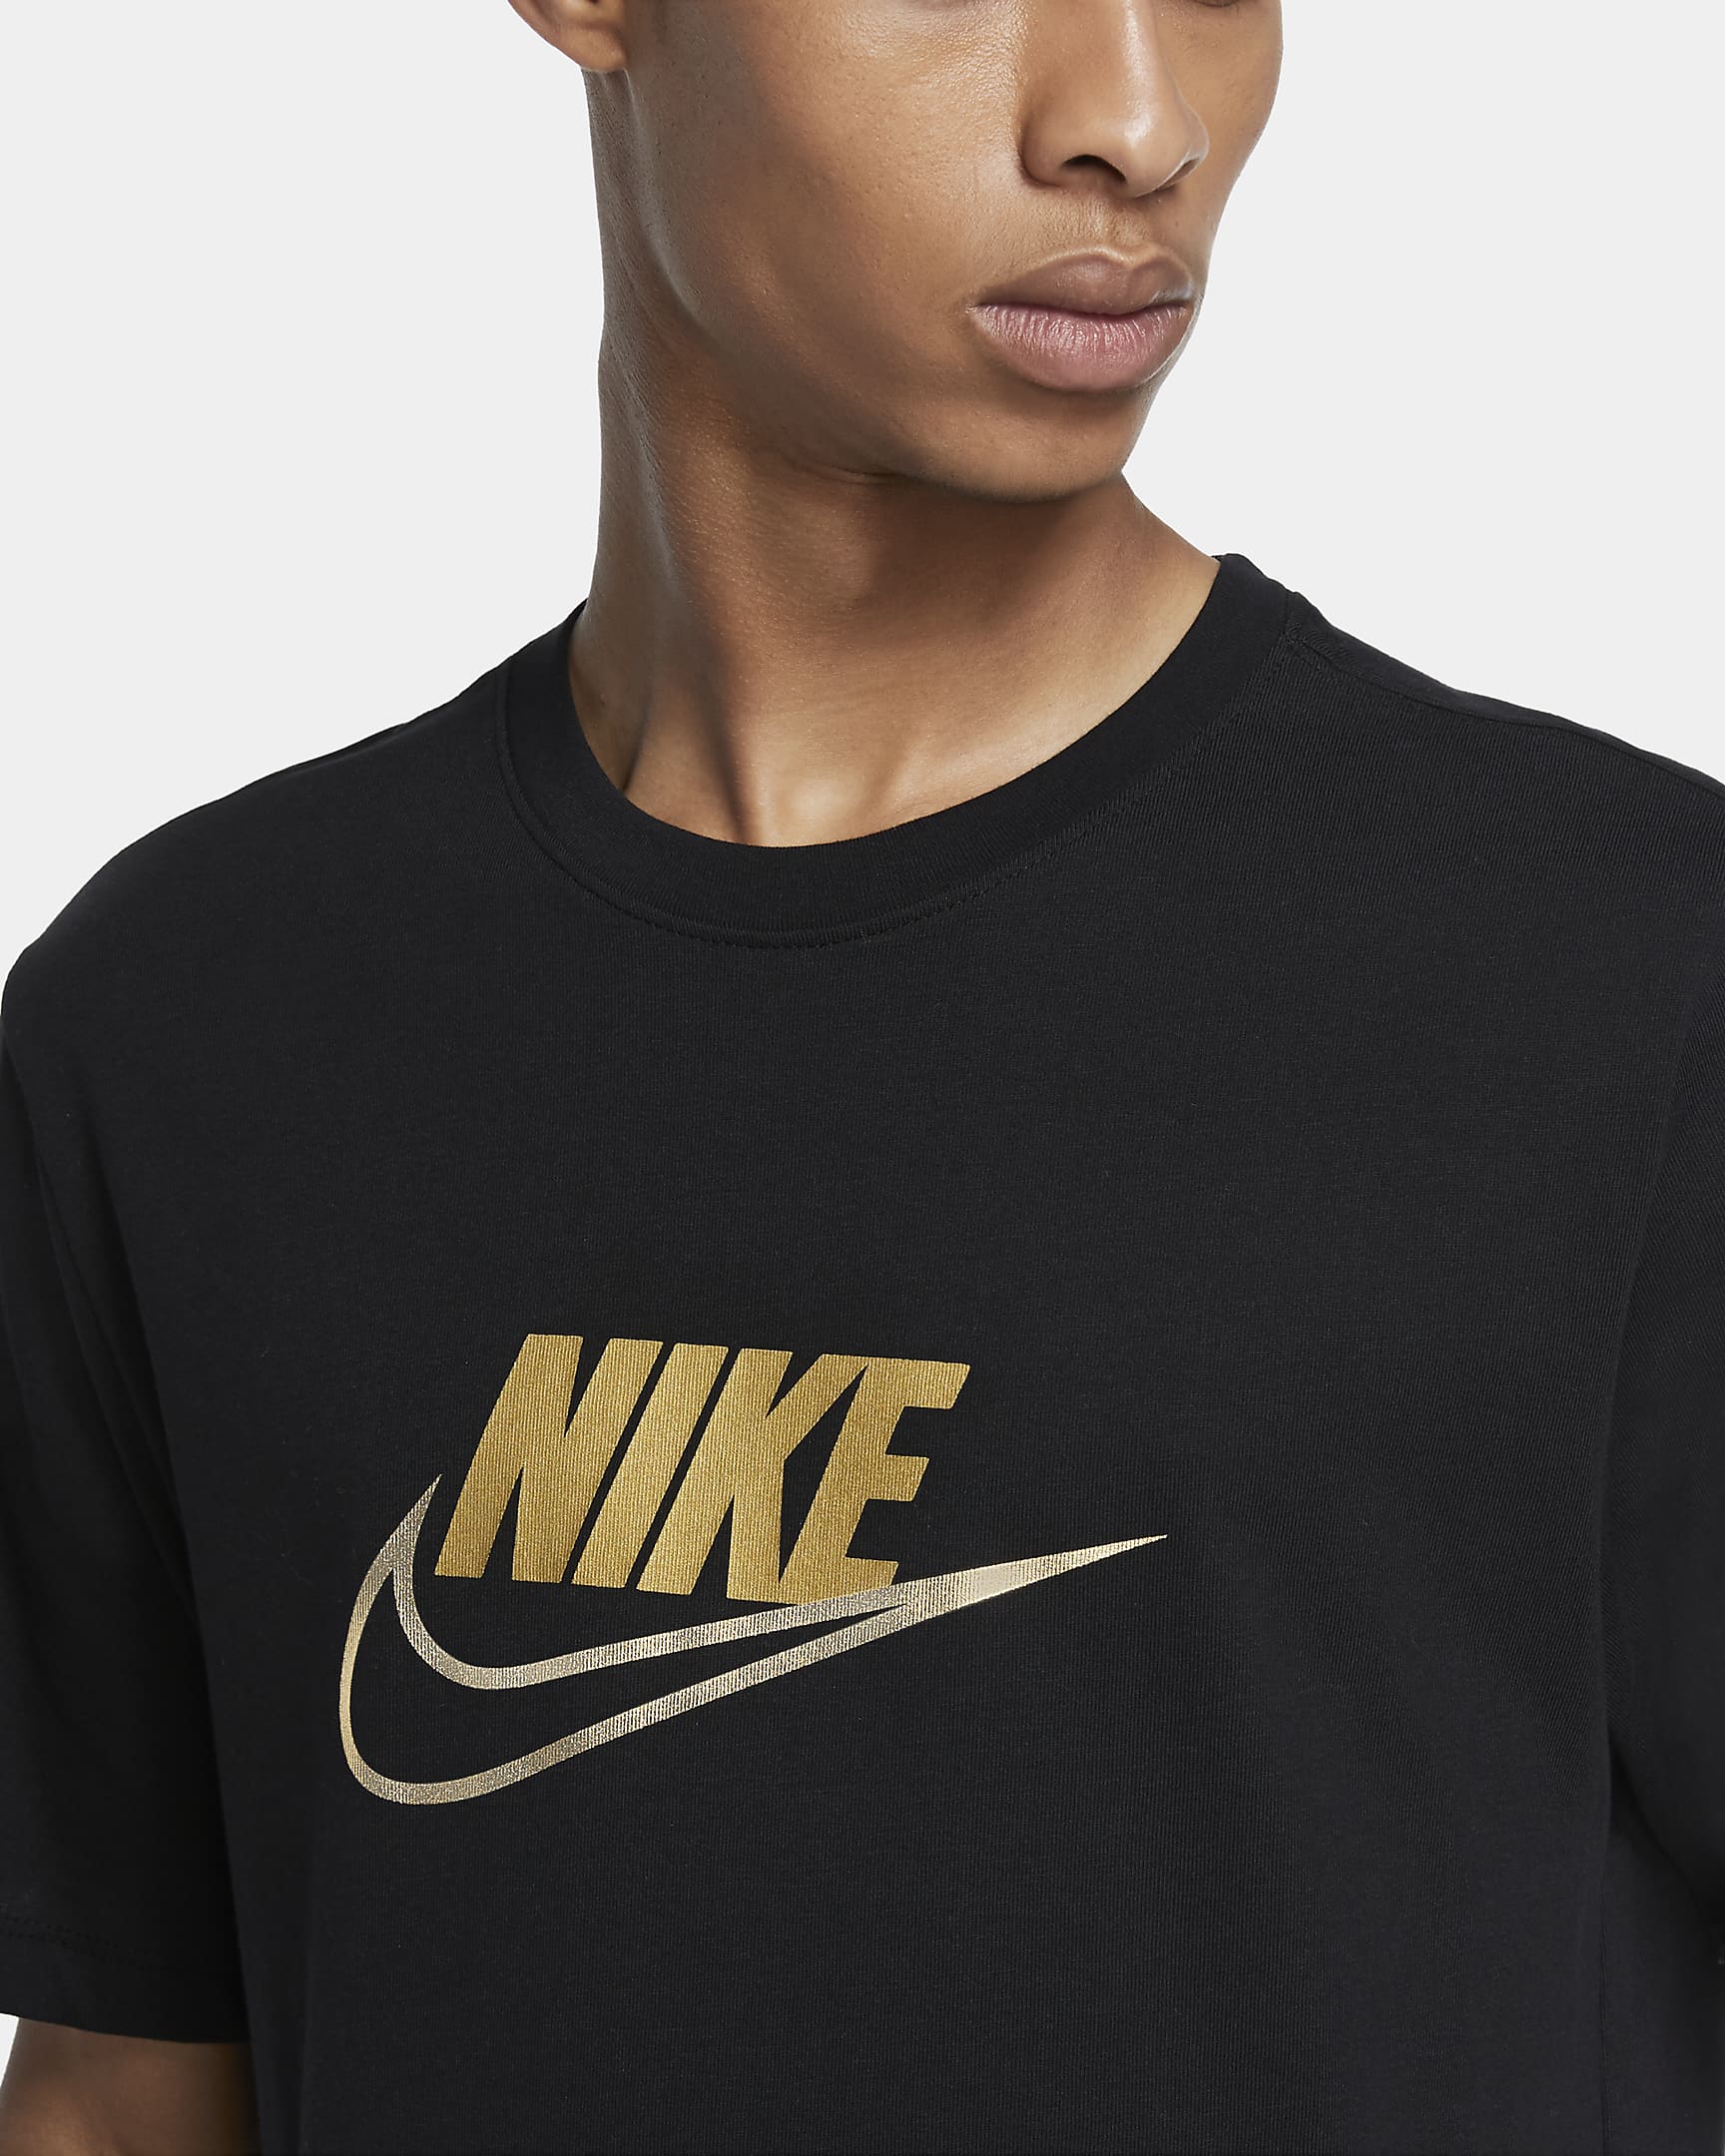 Nike Sportswear Men's Metallic T-Shirt. Nike.com